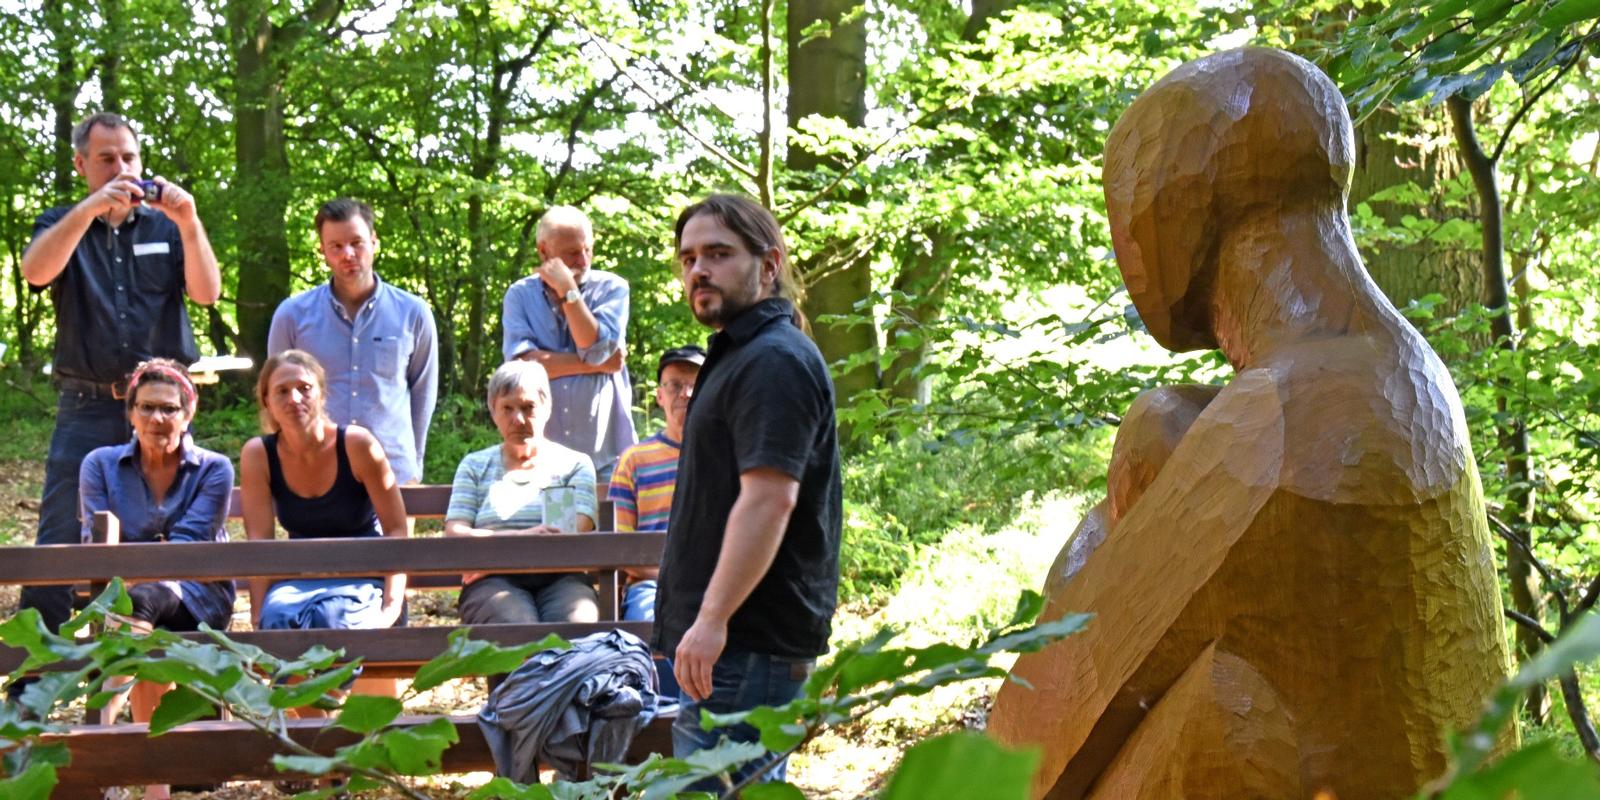 Holzbildhauer Oliver Nischwitz vor seiner Skulptur im Bestattungswald 12 Apostel (Foto: Klaus Holdefehr)